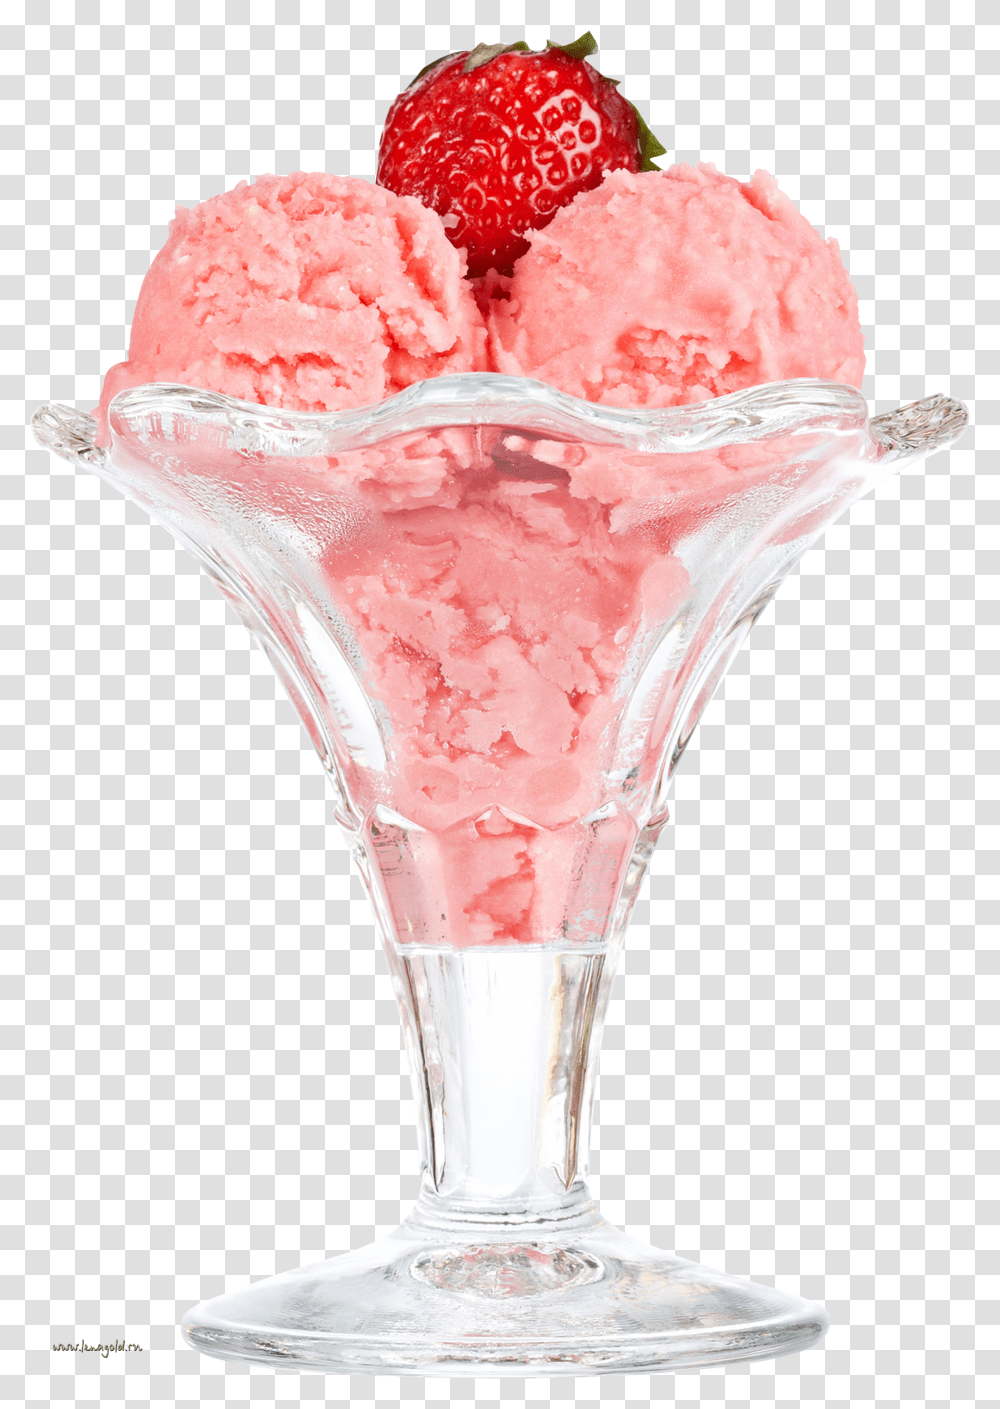 Ice Cream Bowl Ice Cream Bowl Transparent Png